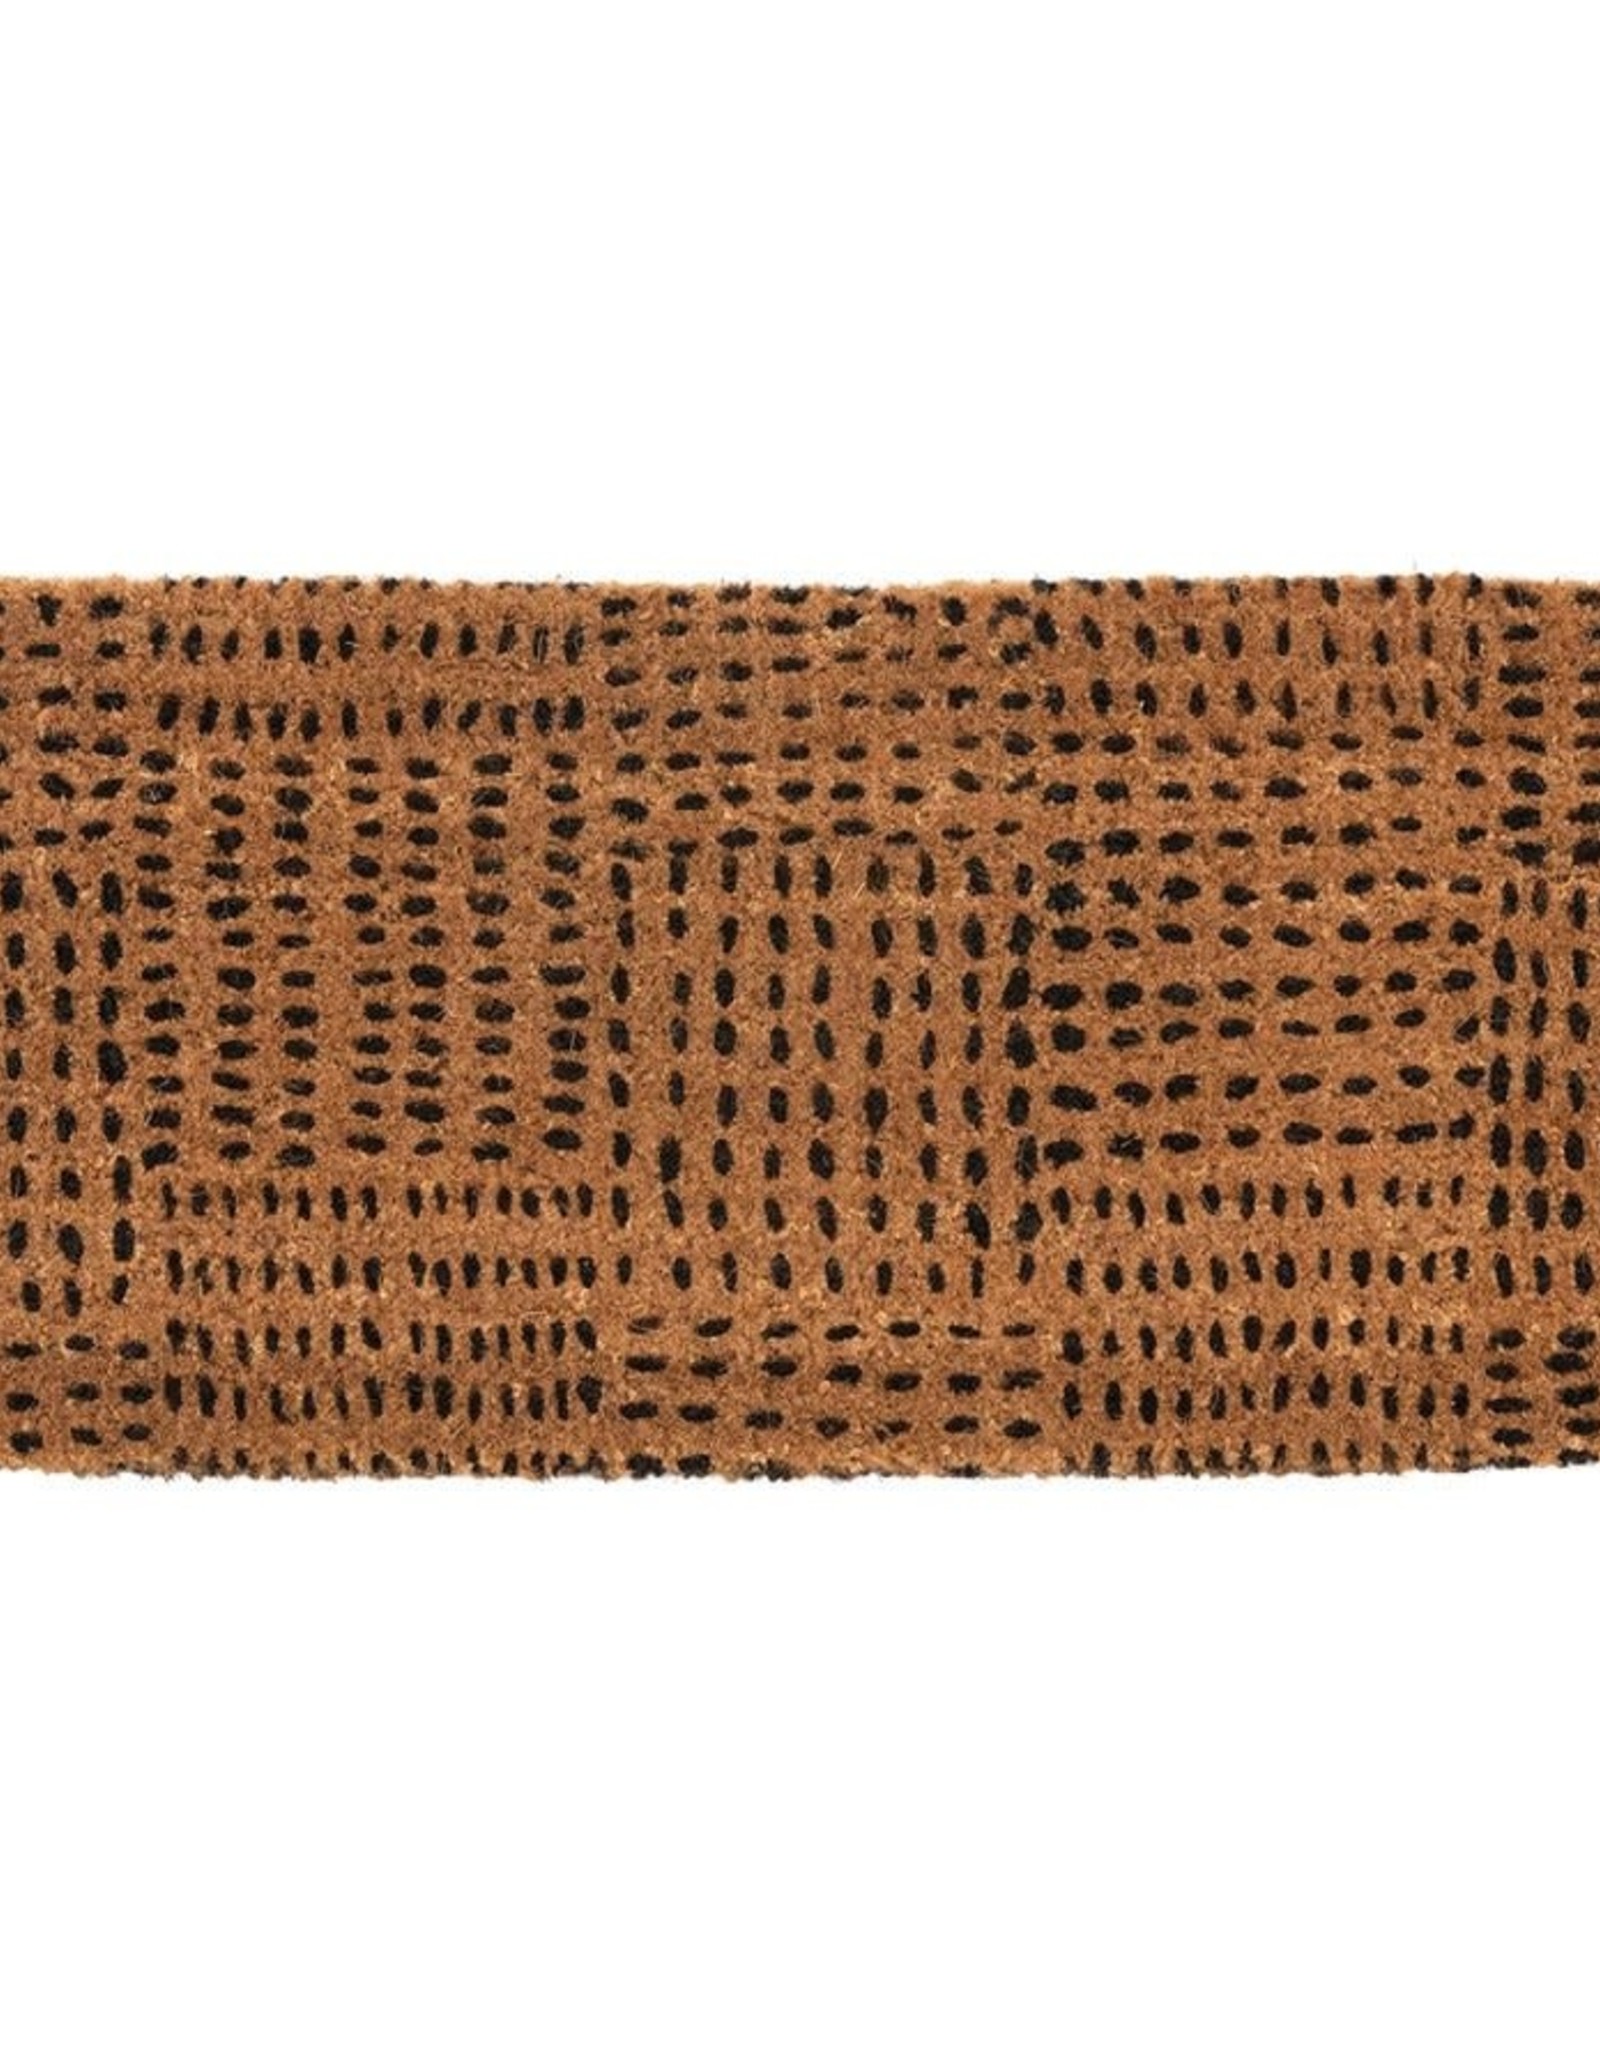 Natural Coir Doormat